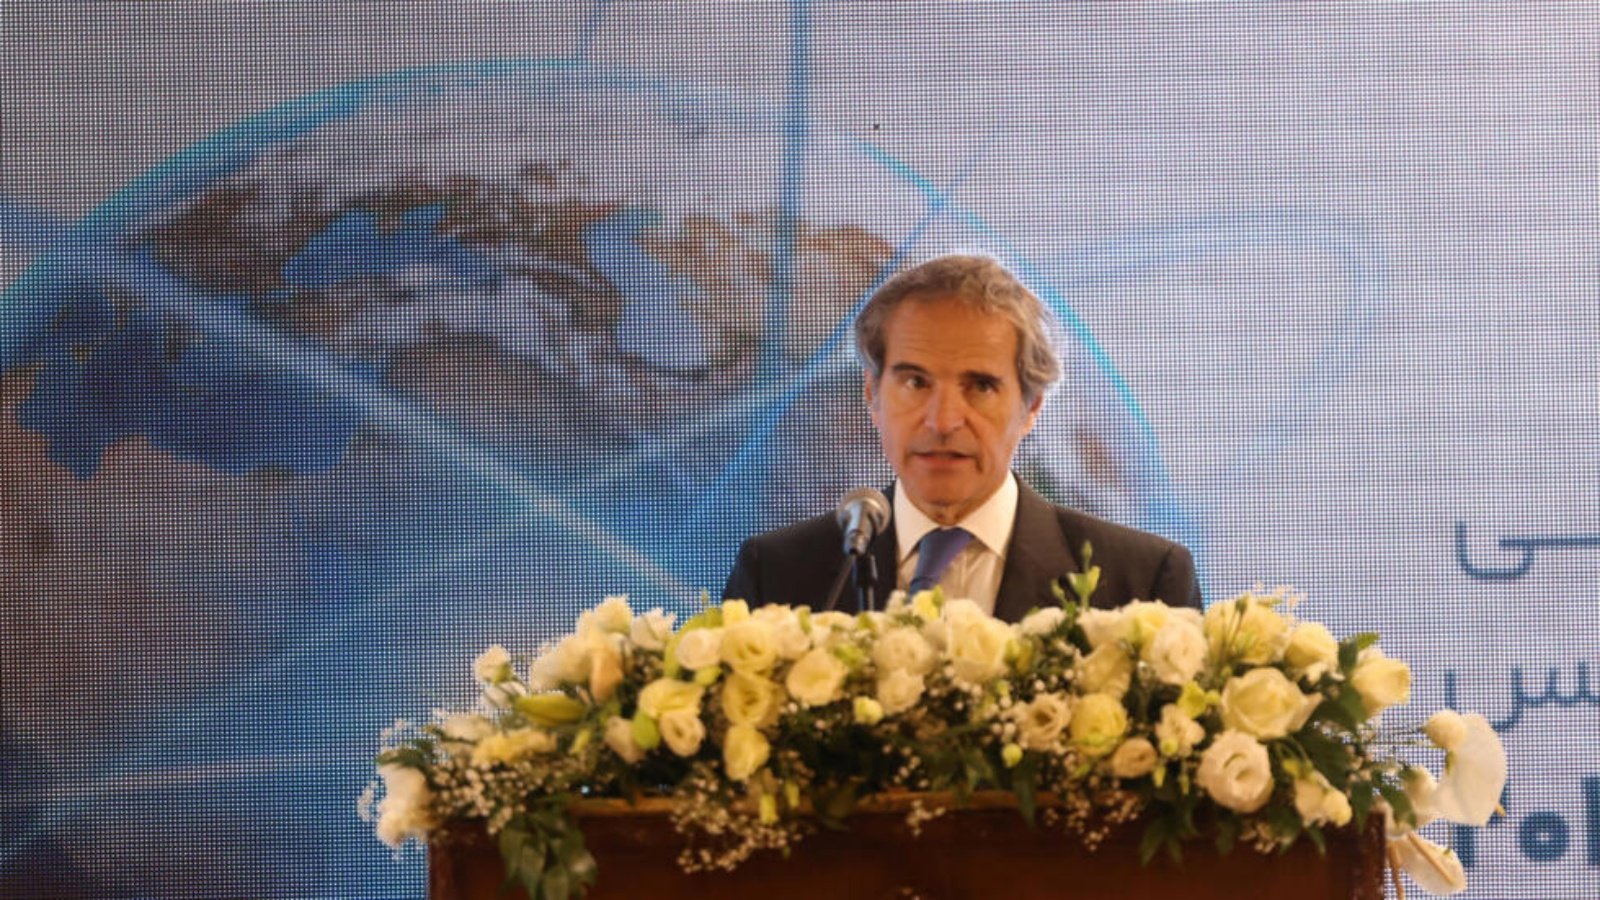 رئيس الوكالة الدولية للطاقة الذرية رافاييل غروسي خلال المؤتمر الدولي للعلوم والتكنولوجيا النووية في أصفهان في إيران في 7 أيار (مايو) 2024 